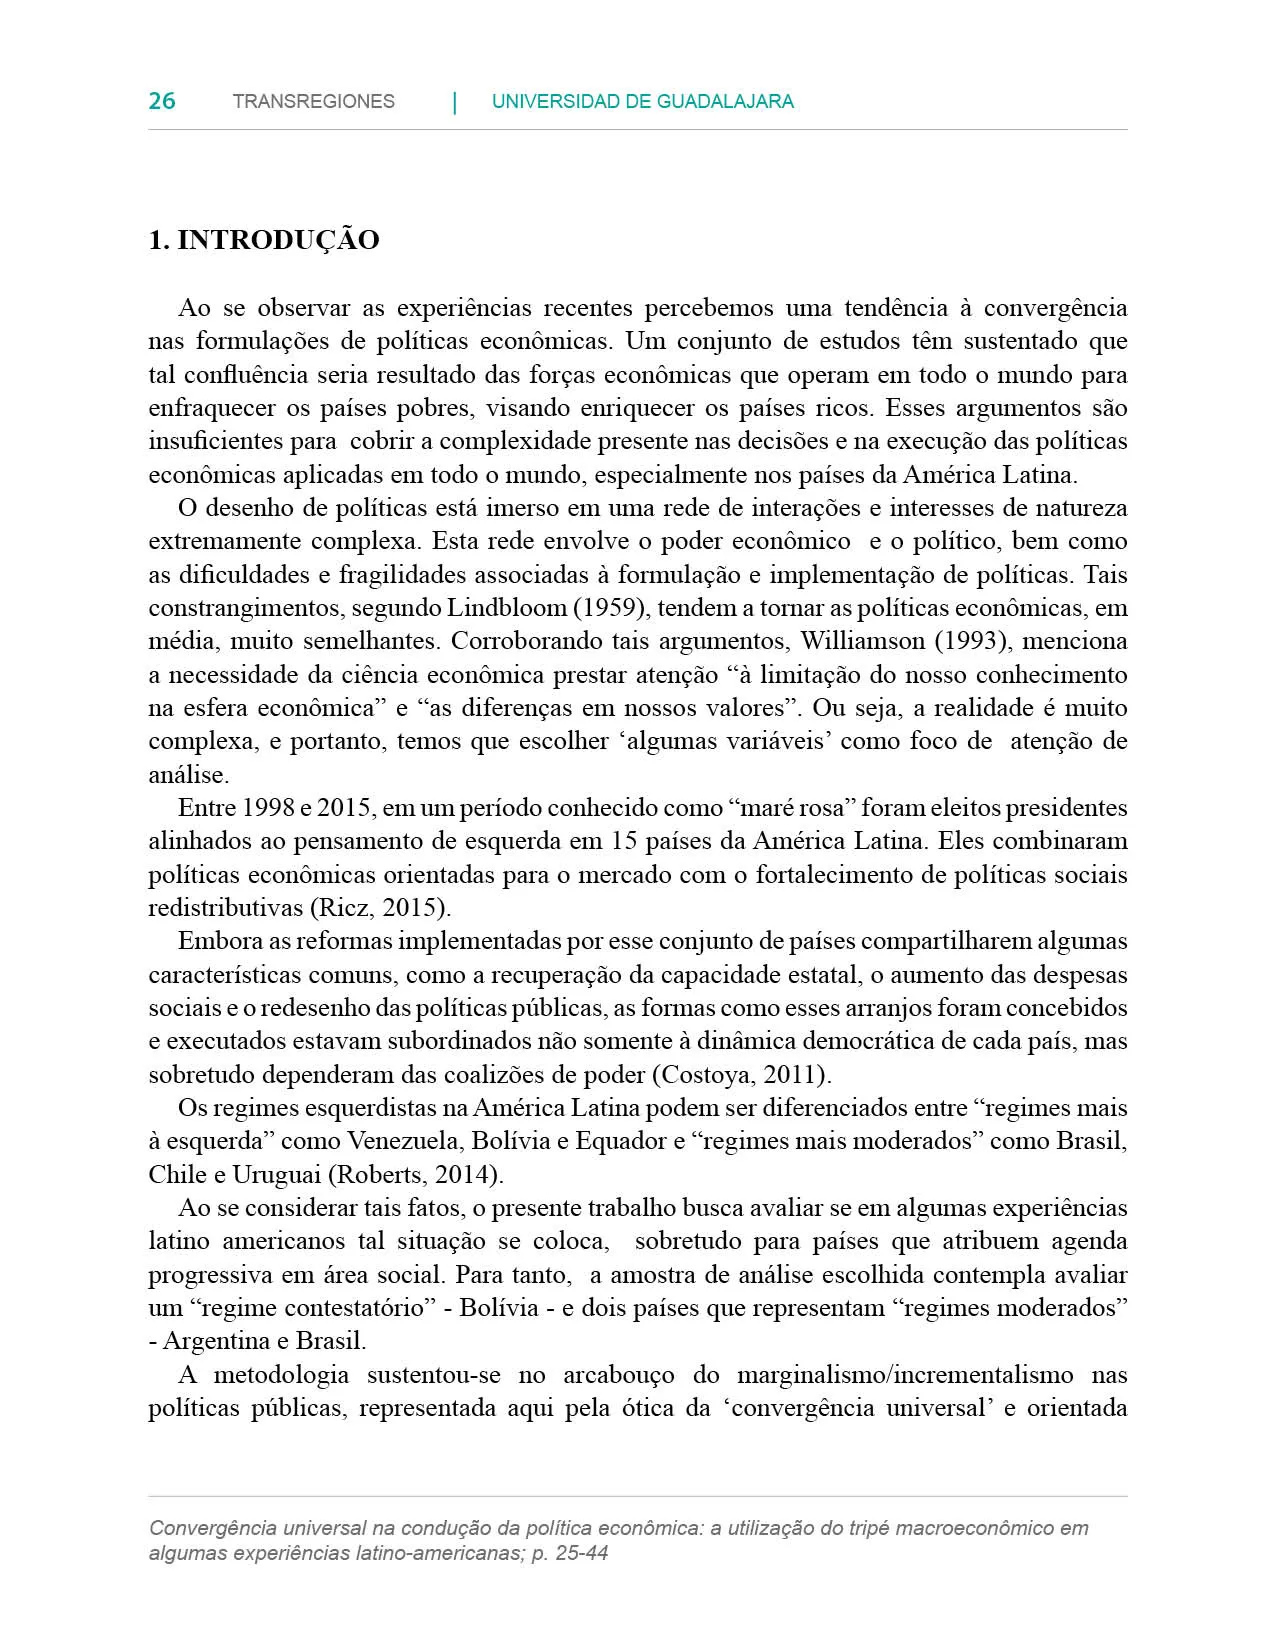 Transregiones, Revista de Estudios Sociales y Culturales